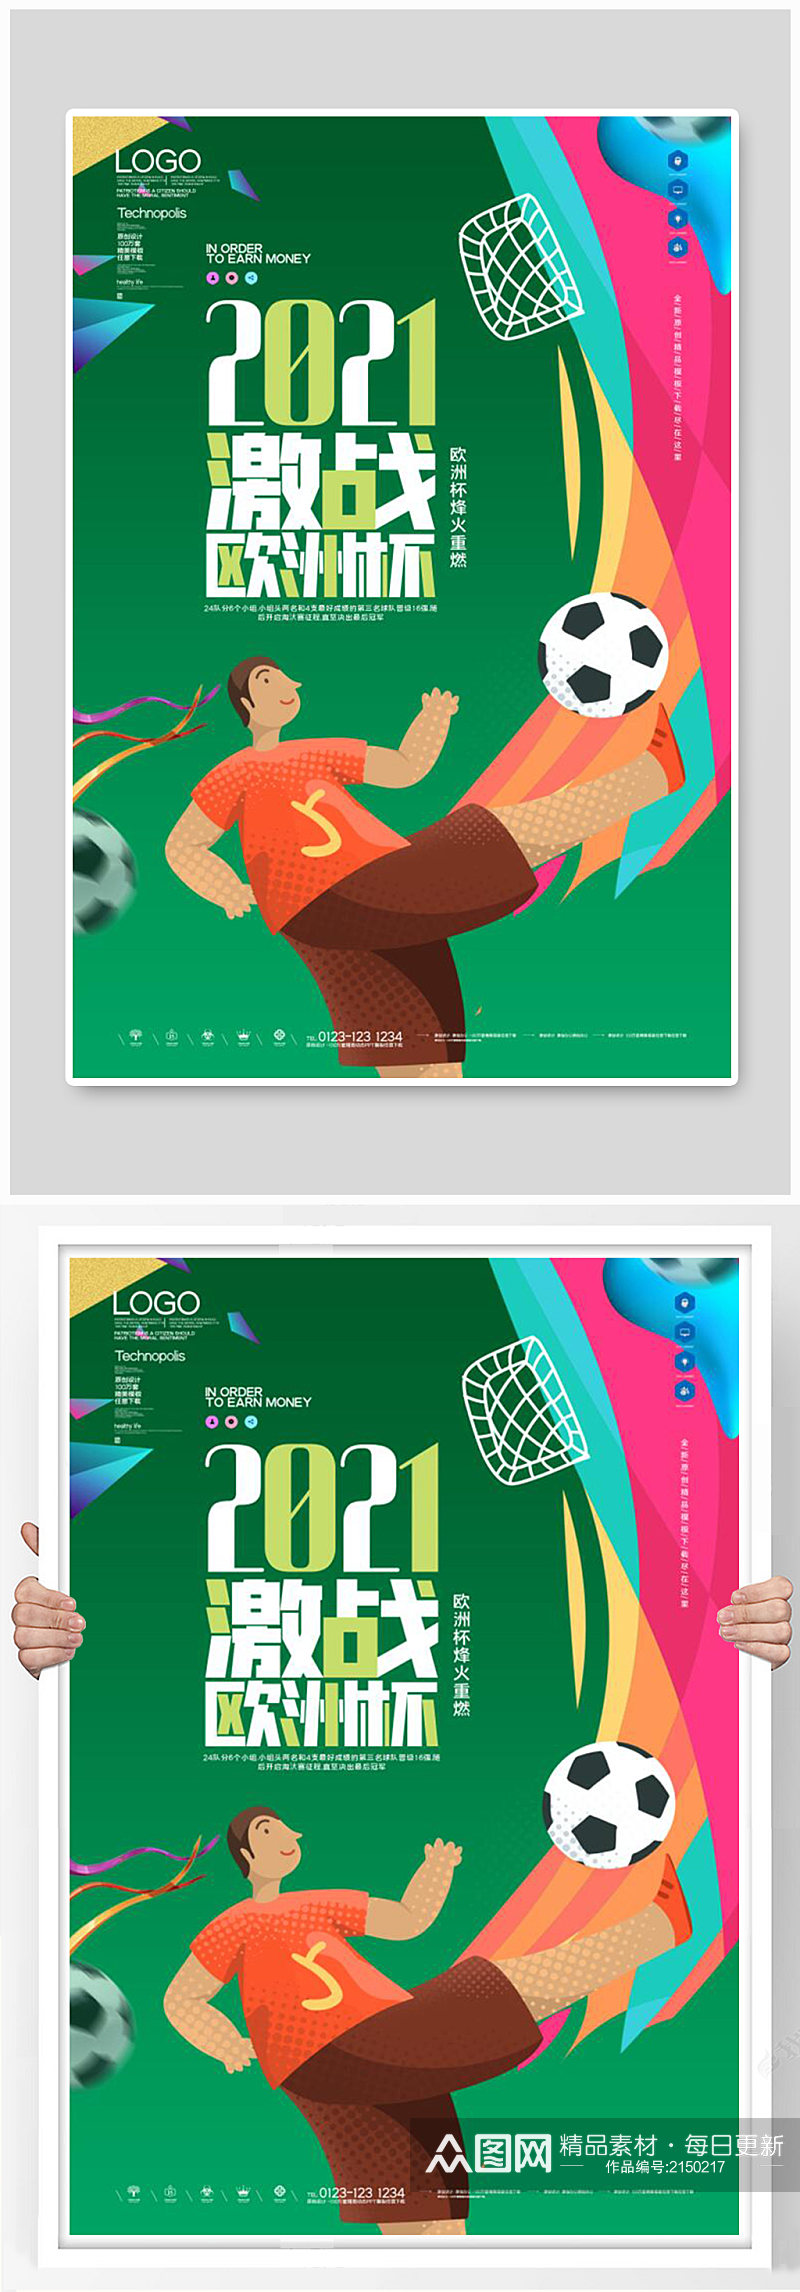 时尚欧洲杯足球宣传海报素材